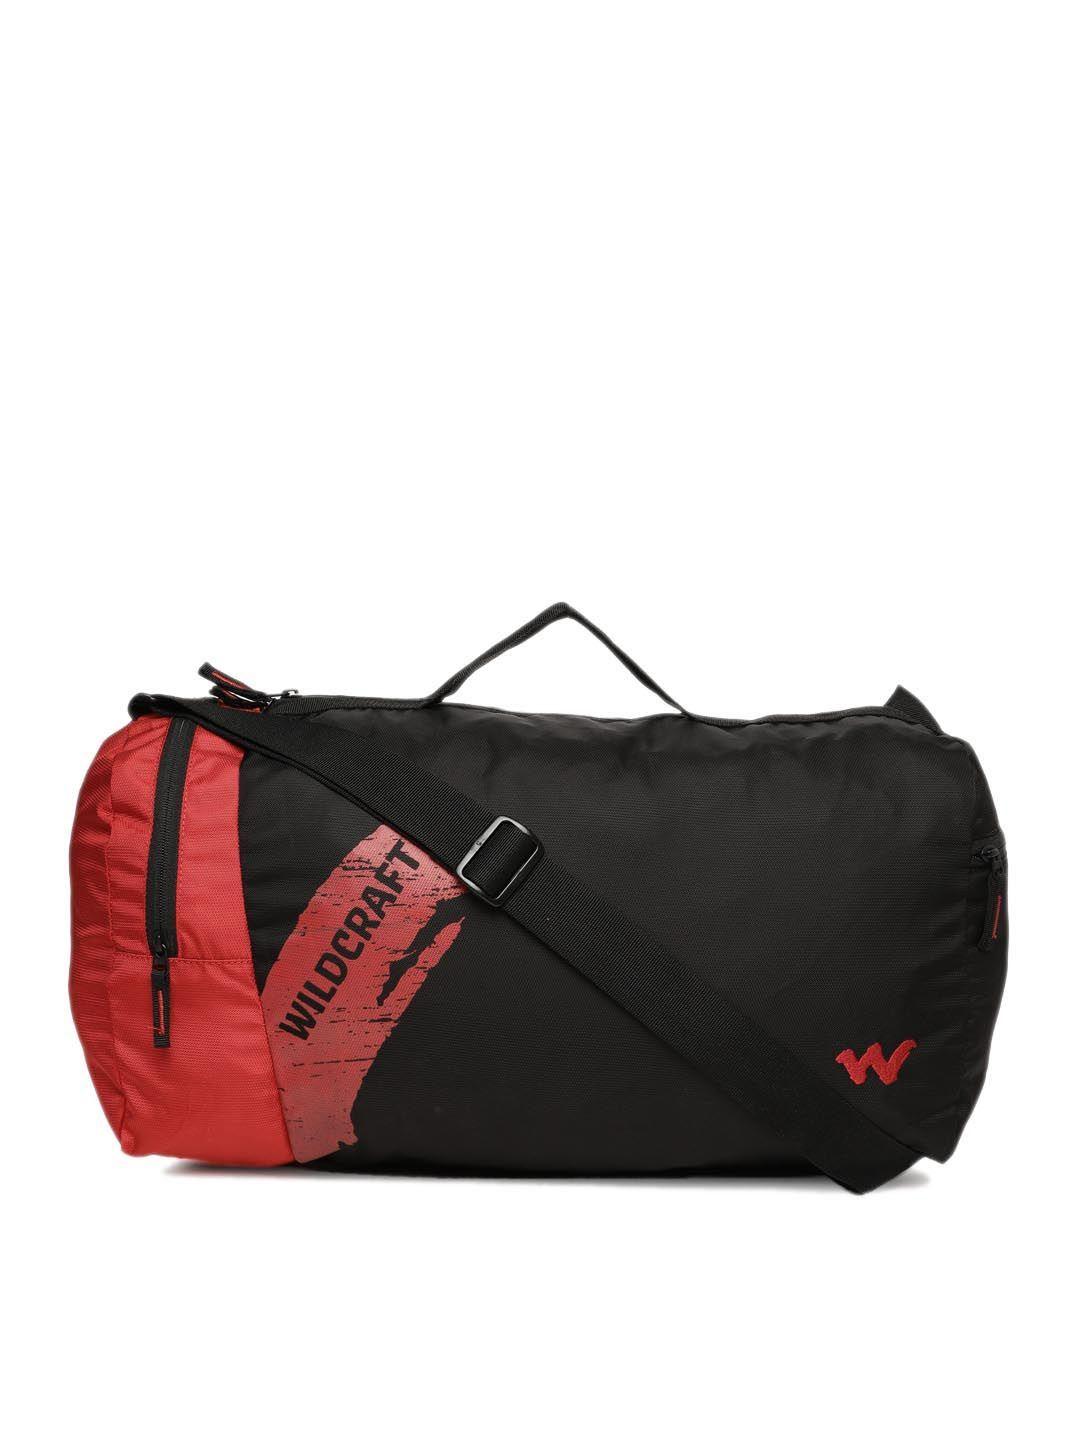 wildcraft men black & red solid duffel bag